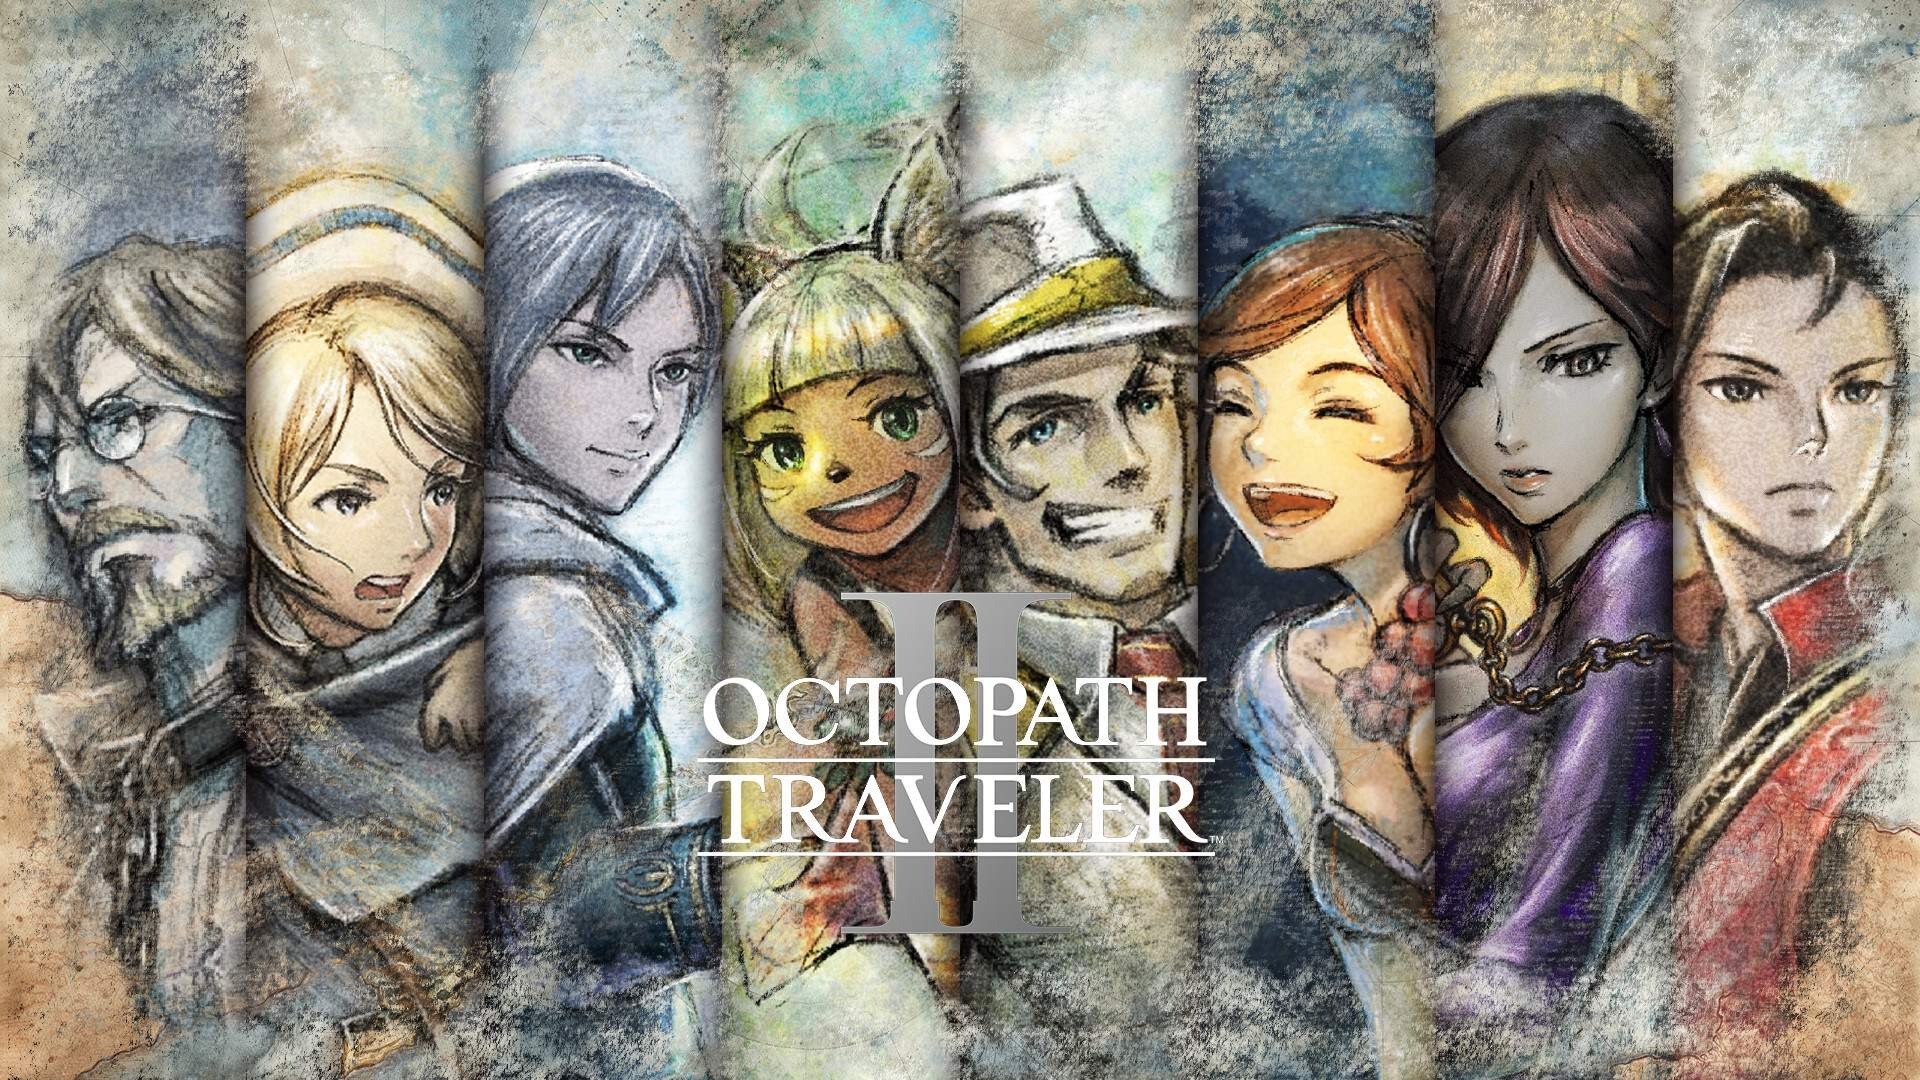 Nintendo anuncia Octopath Traveler 2